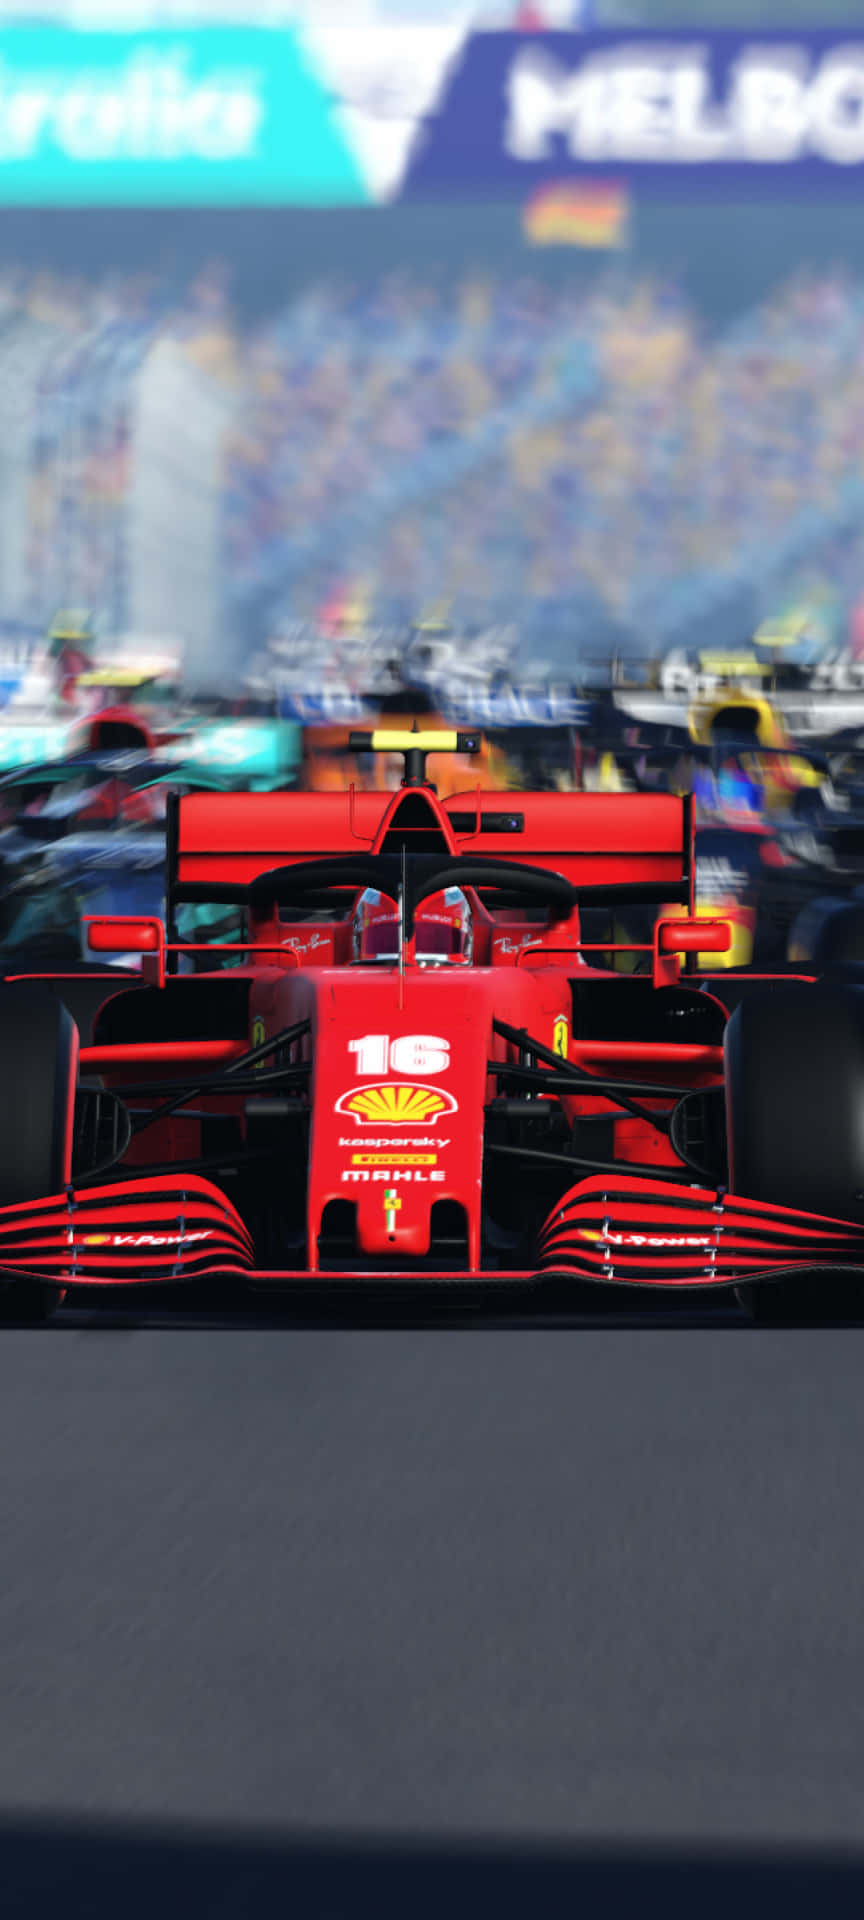 Ferrari F1 team on the Paddock Wallpaper